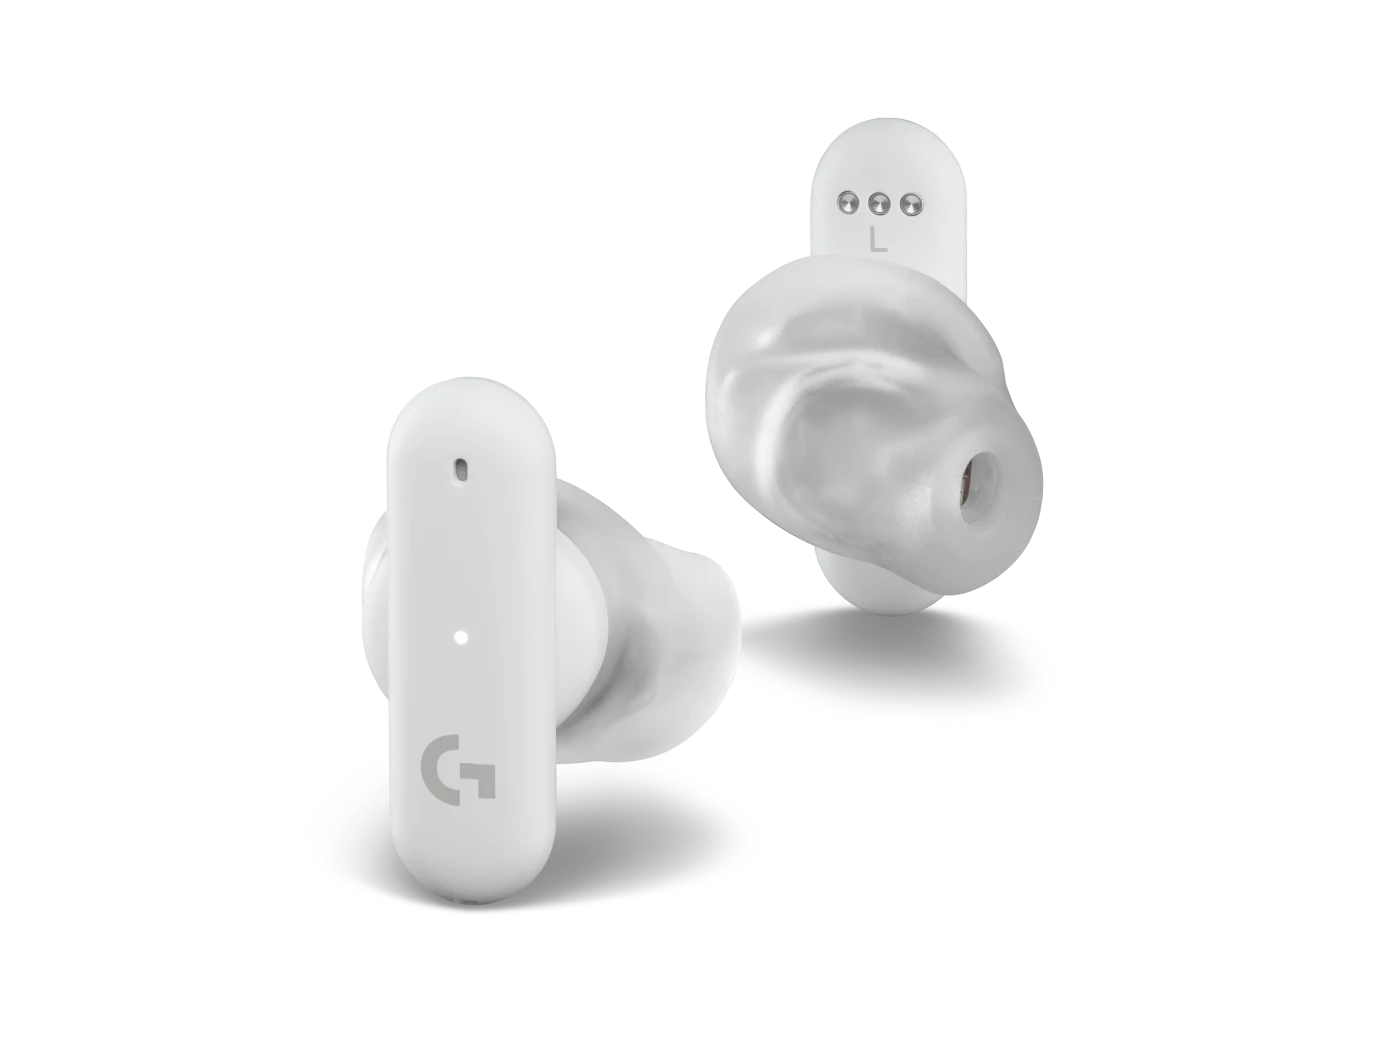 Logitech Ultimate Ears UE - True Wireless Bluetooth Earbuds 985-001056 Eclipse